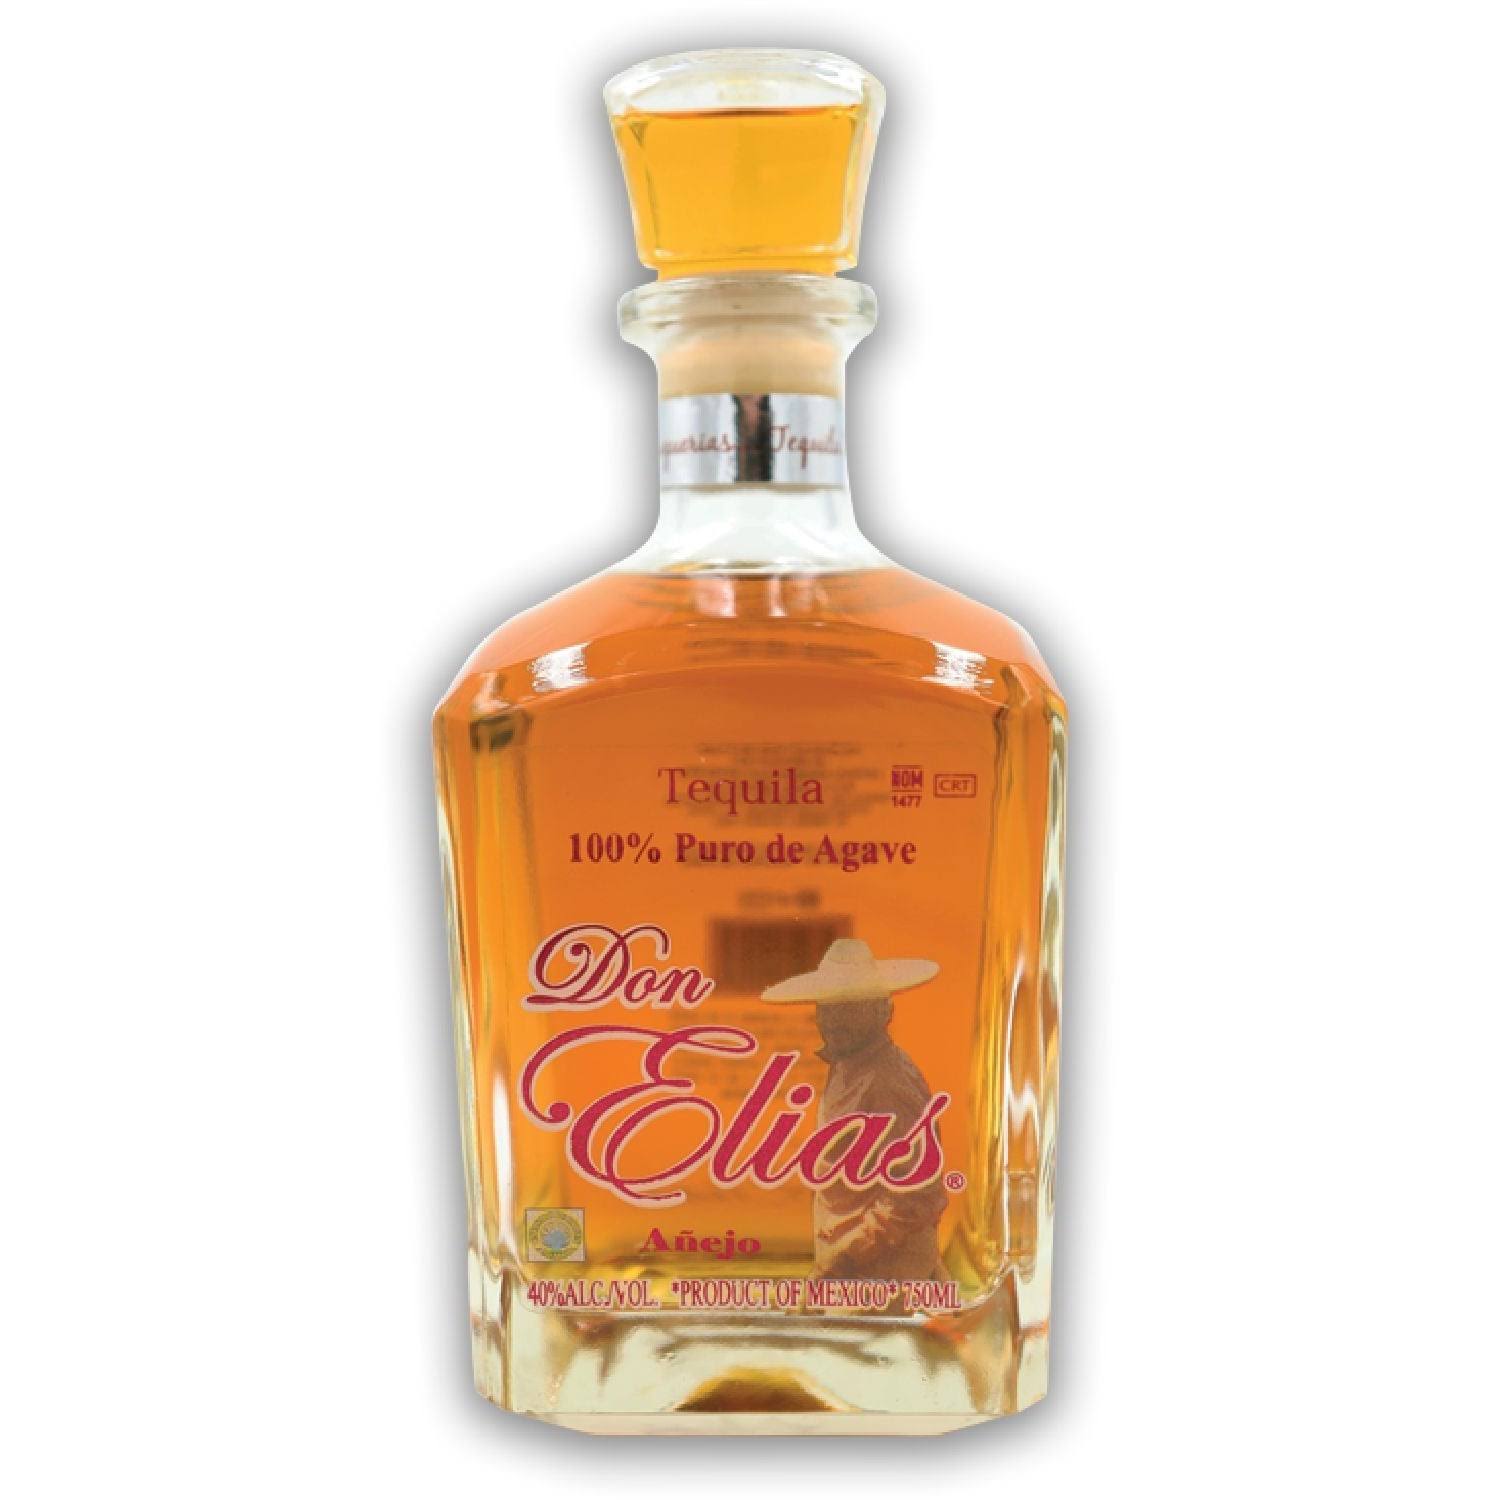 Don Elias Anejo Tequila, 750ml Bottle